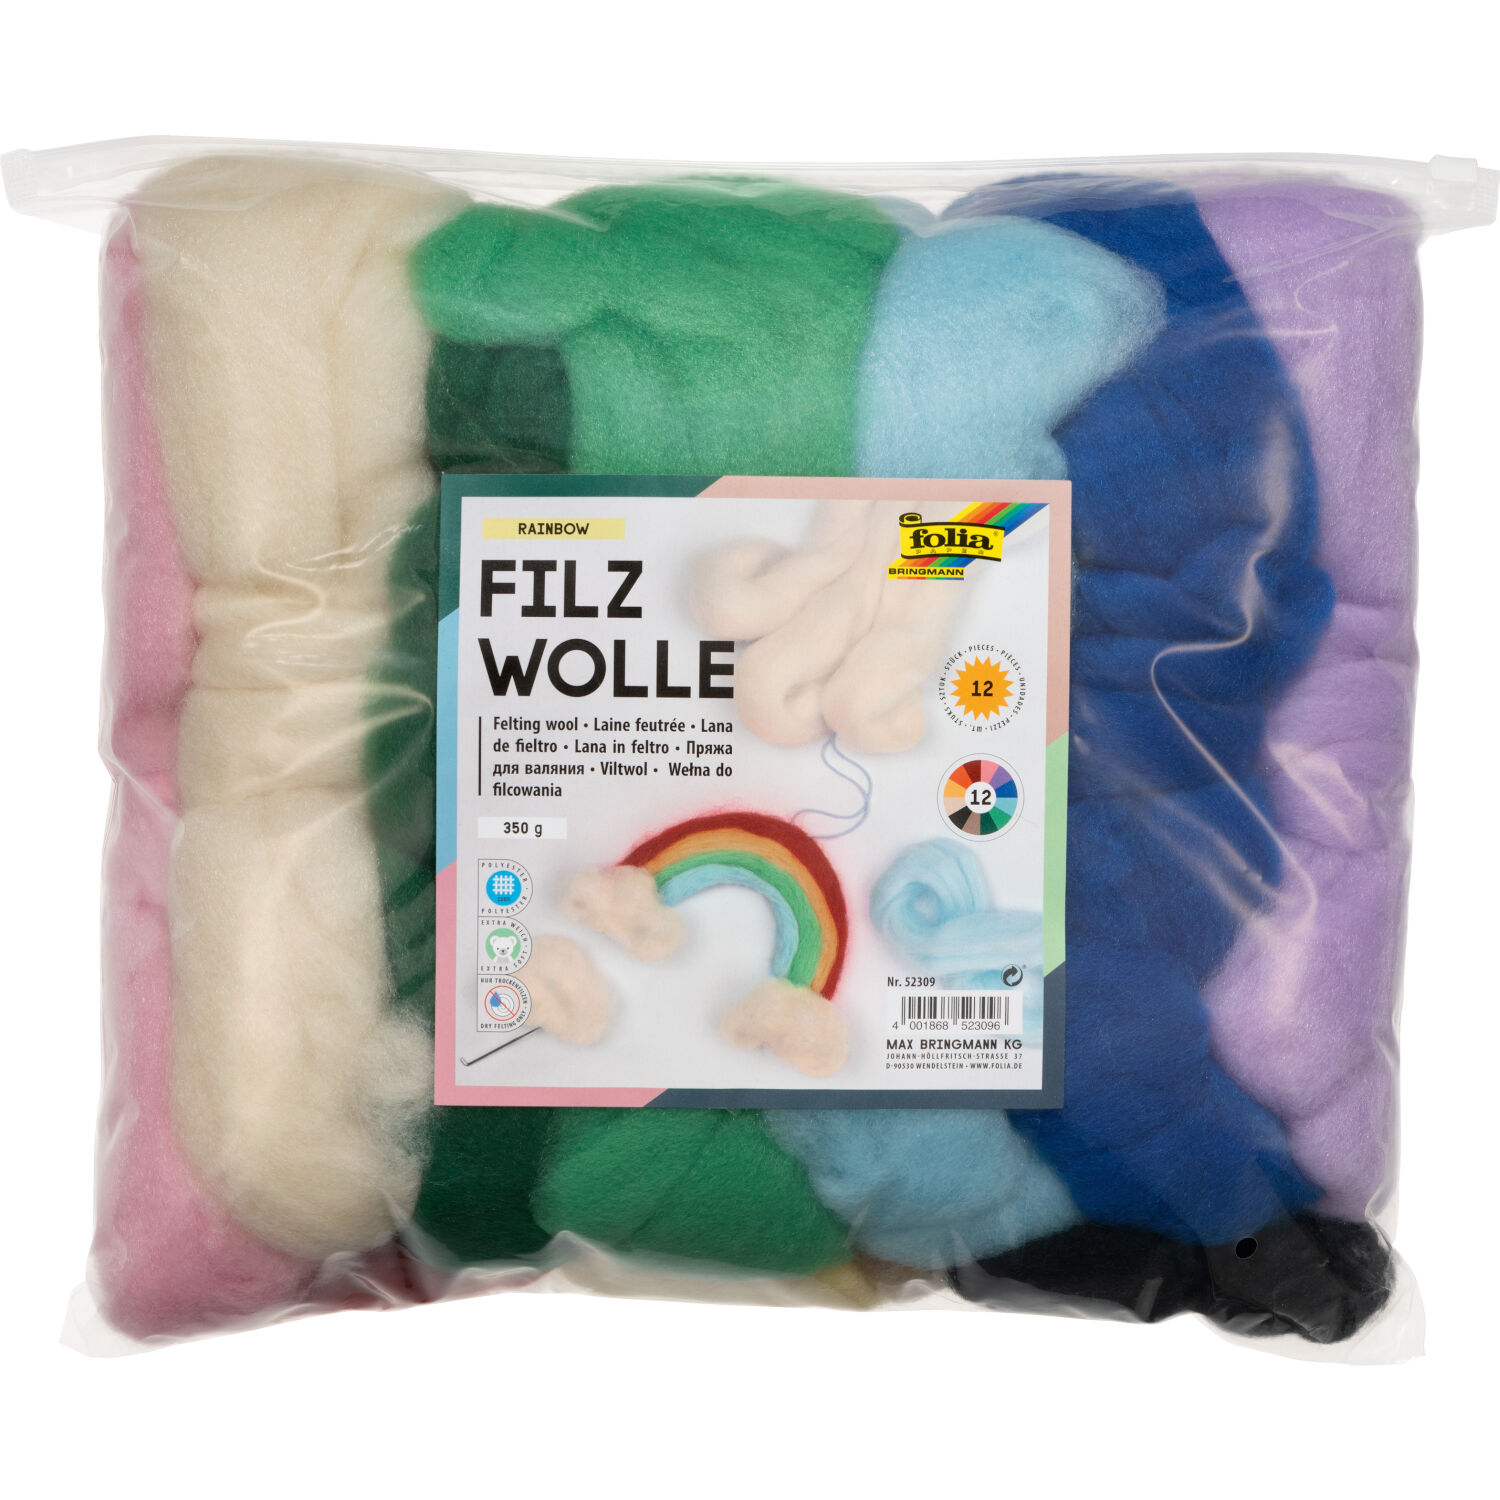 NEU Filzwolle / Mrchenwolle Set Rainbow, 12 Farben sortiert, 350 g